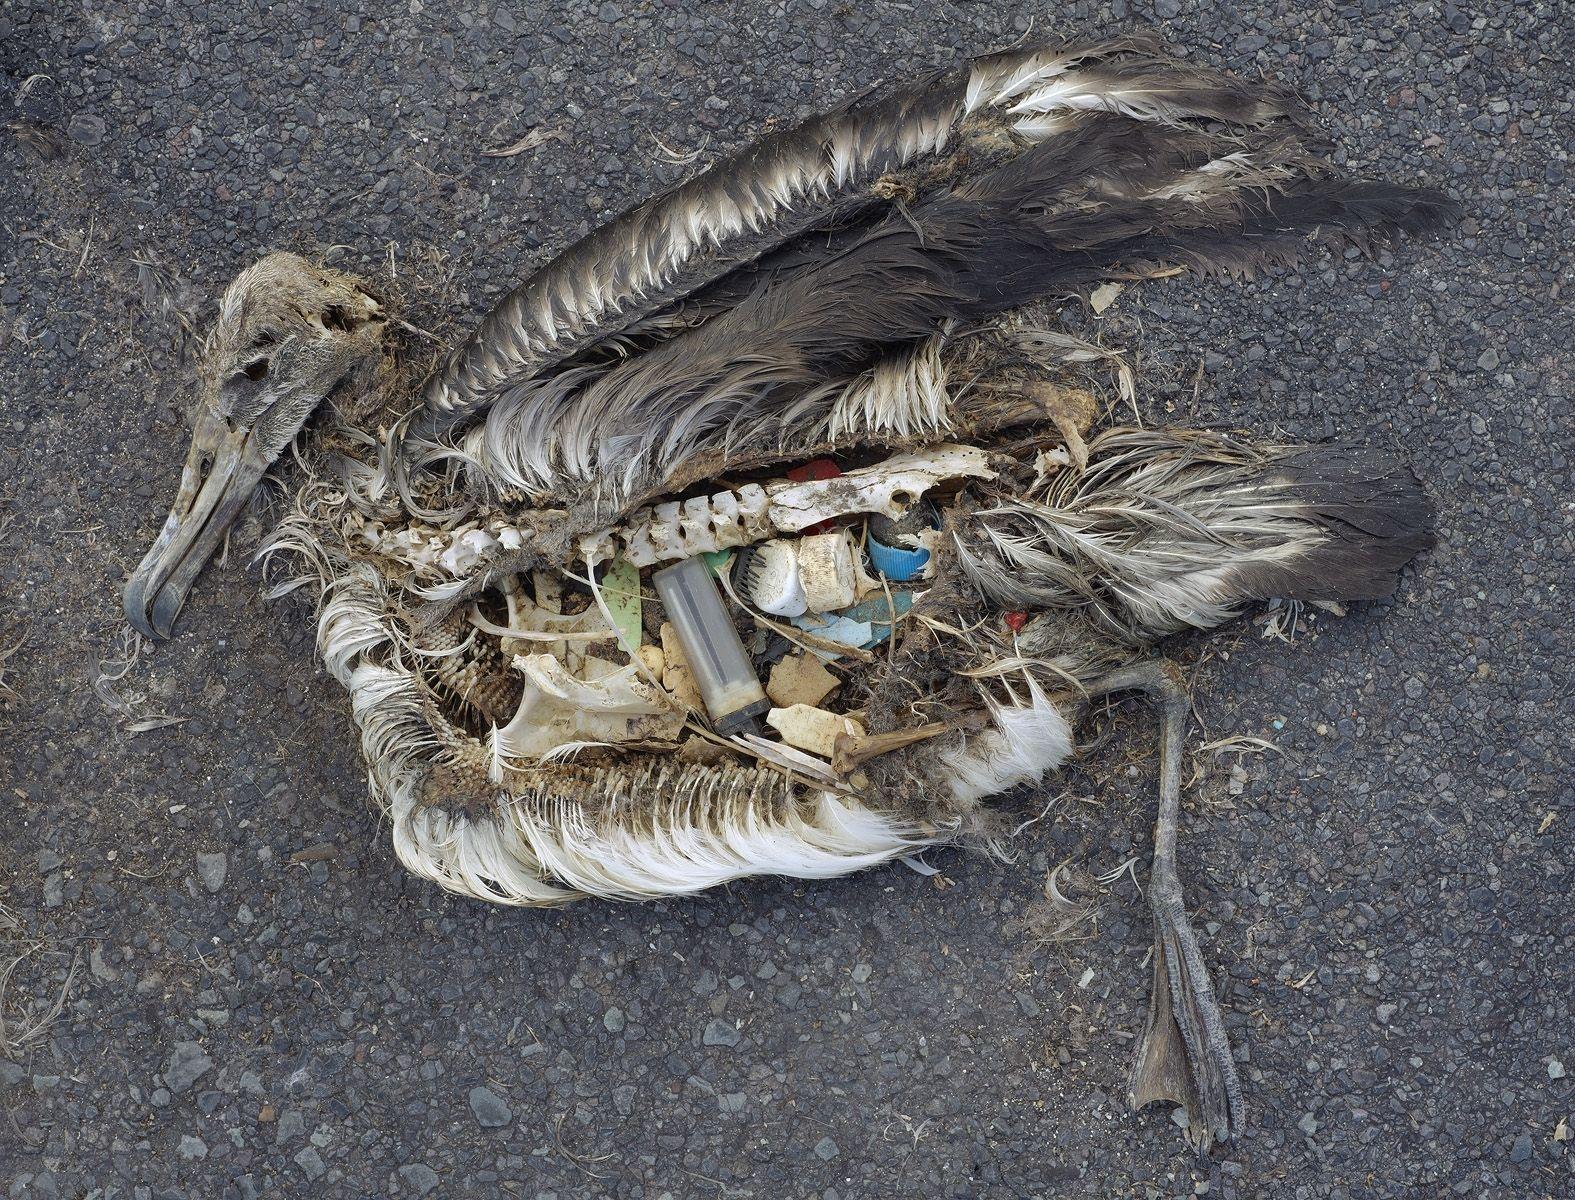 Denne albatrossen har fått mye plast i seg. Foto: Chris Jordan, Creative Commons